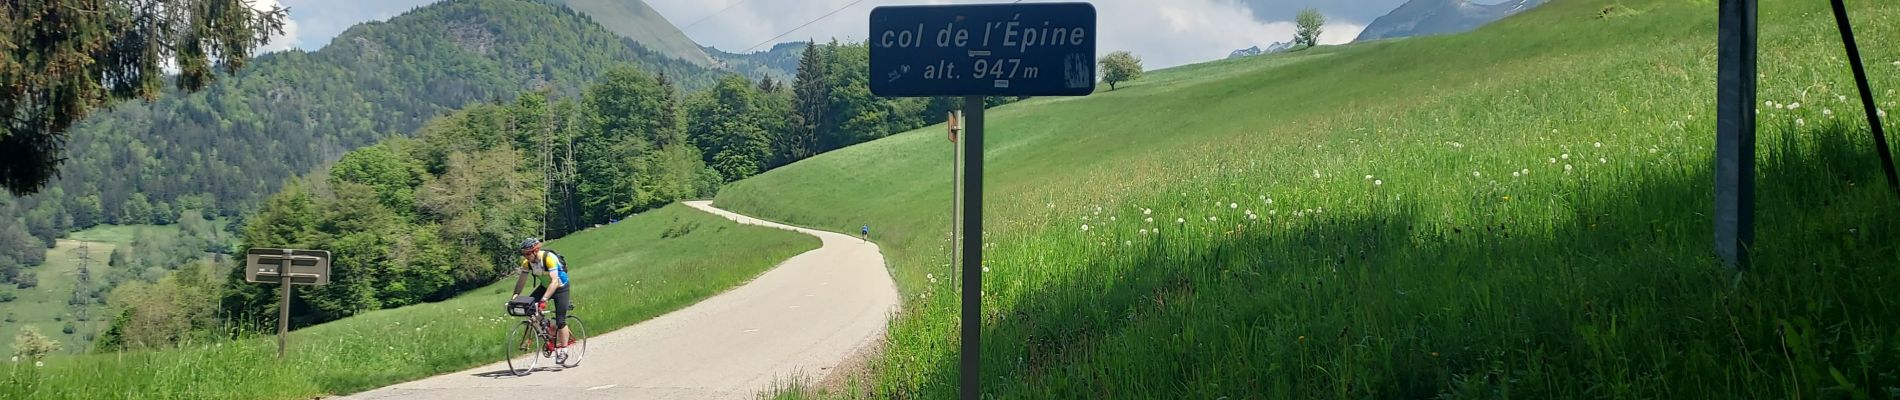 Tour Rennrad Saint-Jorioz - REALISE P1 Col de l'Epine-La Tournette - Photo